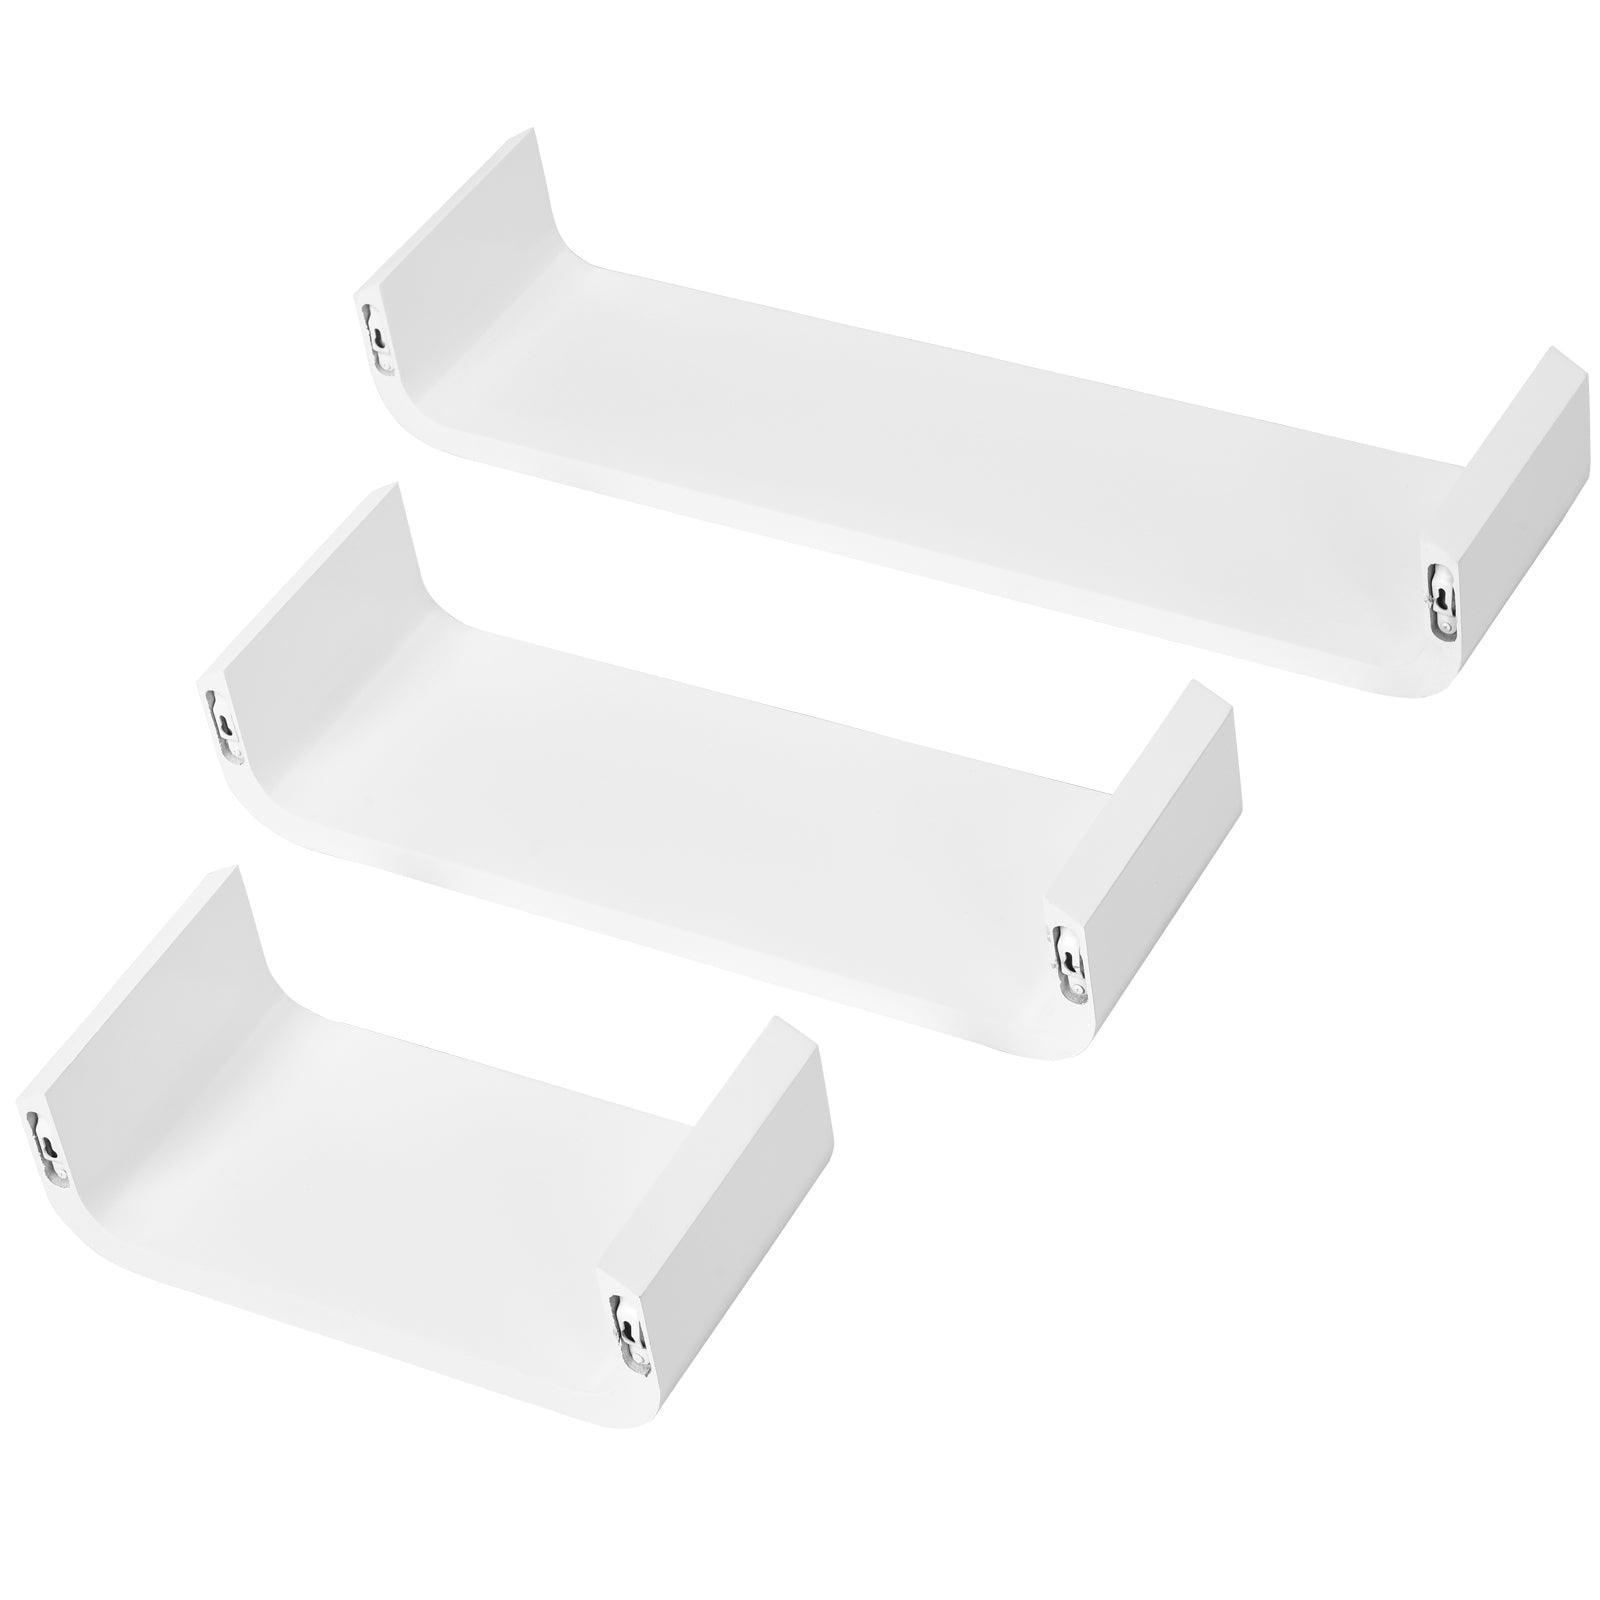 HOMCOM U Shaped Shelves Set - White, 3 Pieces - ALL4U RETAILER LTD